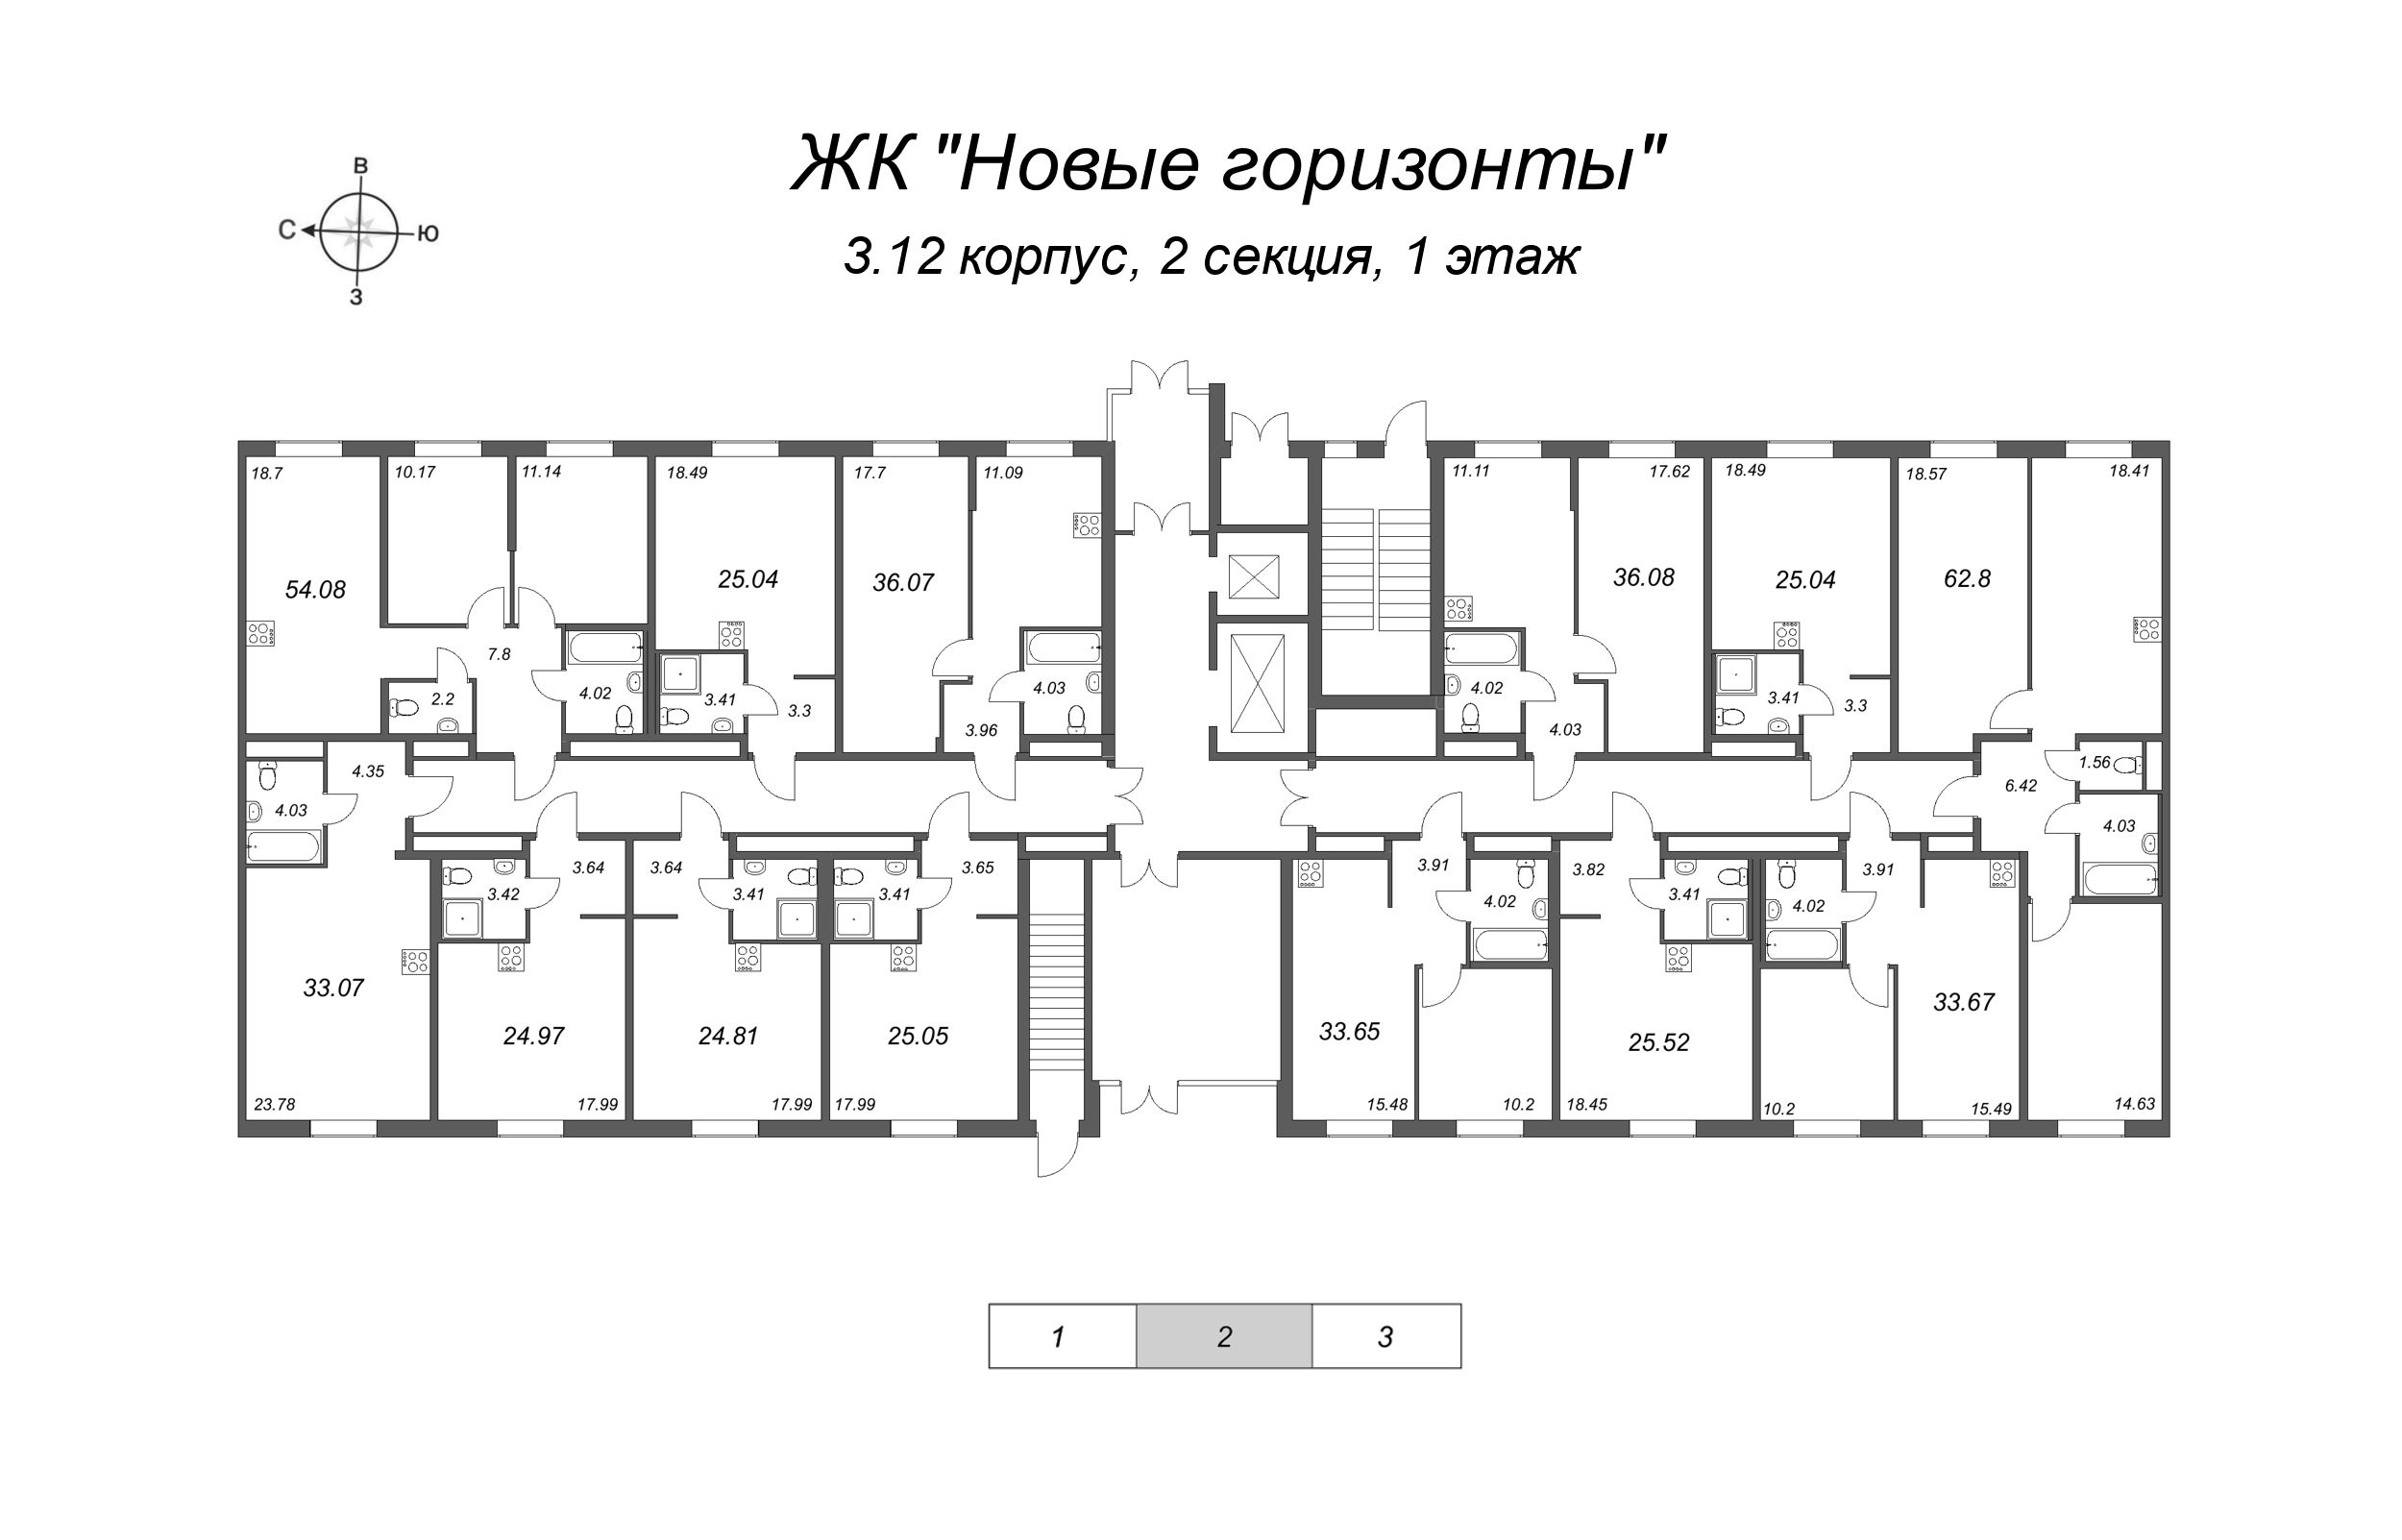 Квартира-студия, 24.81 м² в ЖК "Новые горизонты" - планировка этажа